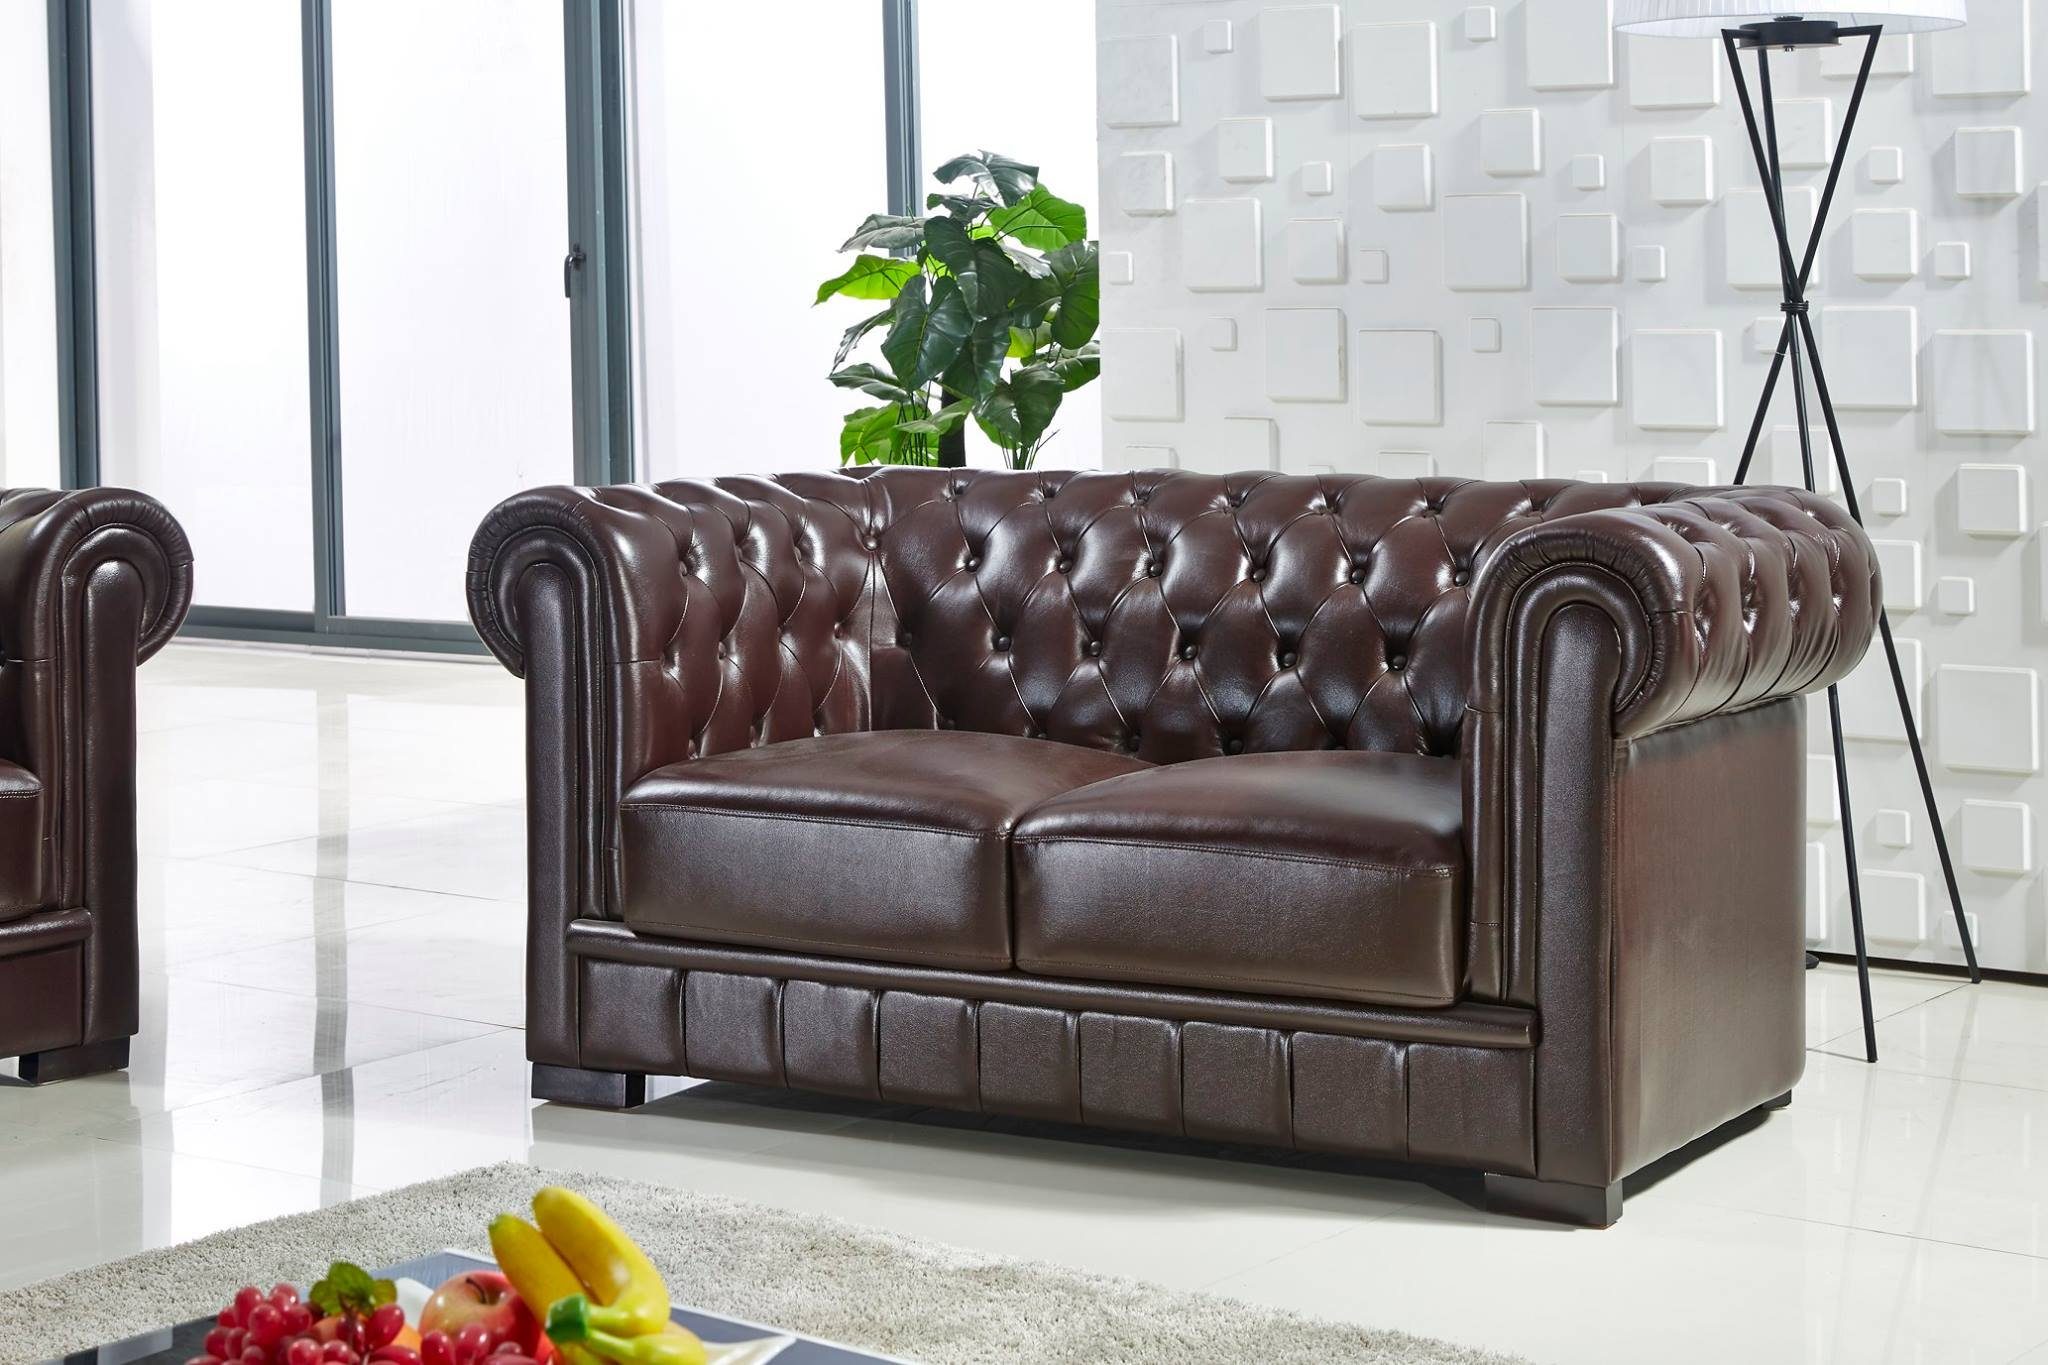 JVmoebel 2-Sitzer, Designer Chesterfield Zweisitzer Lounge Möbel 2 Sitzer Sofa